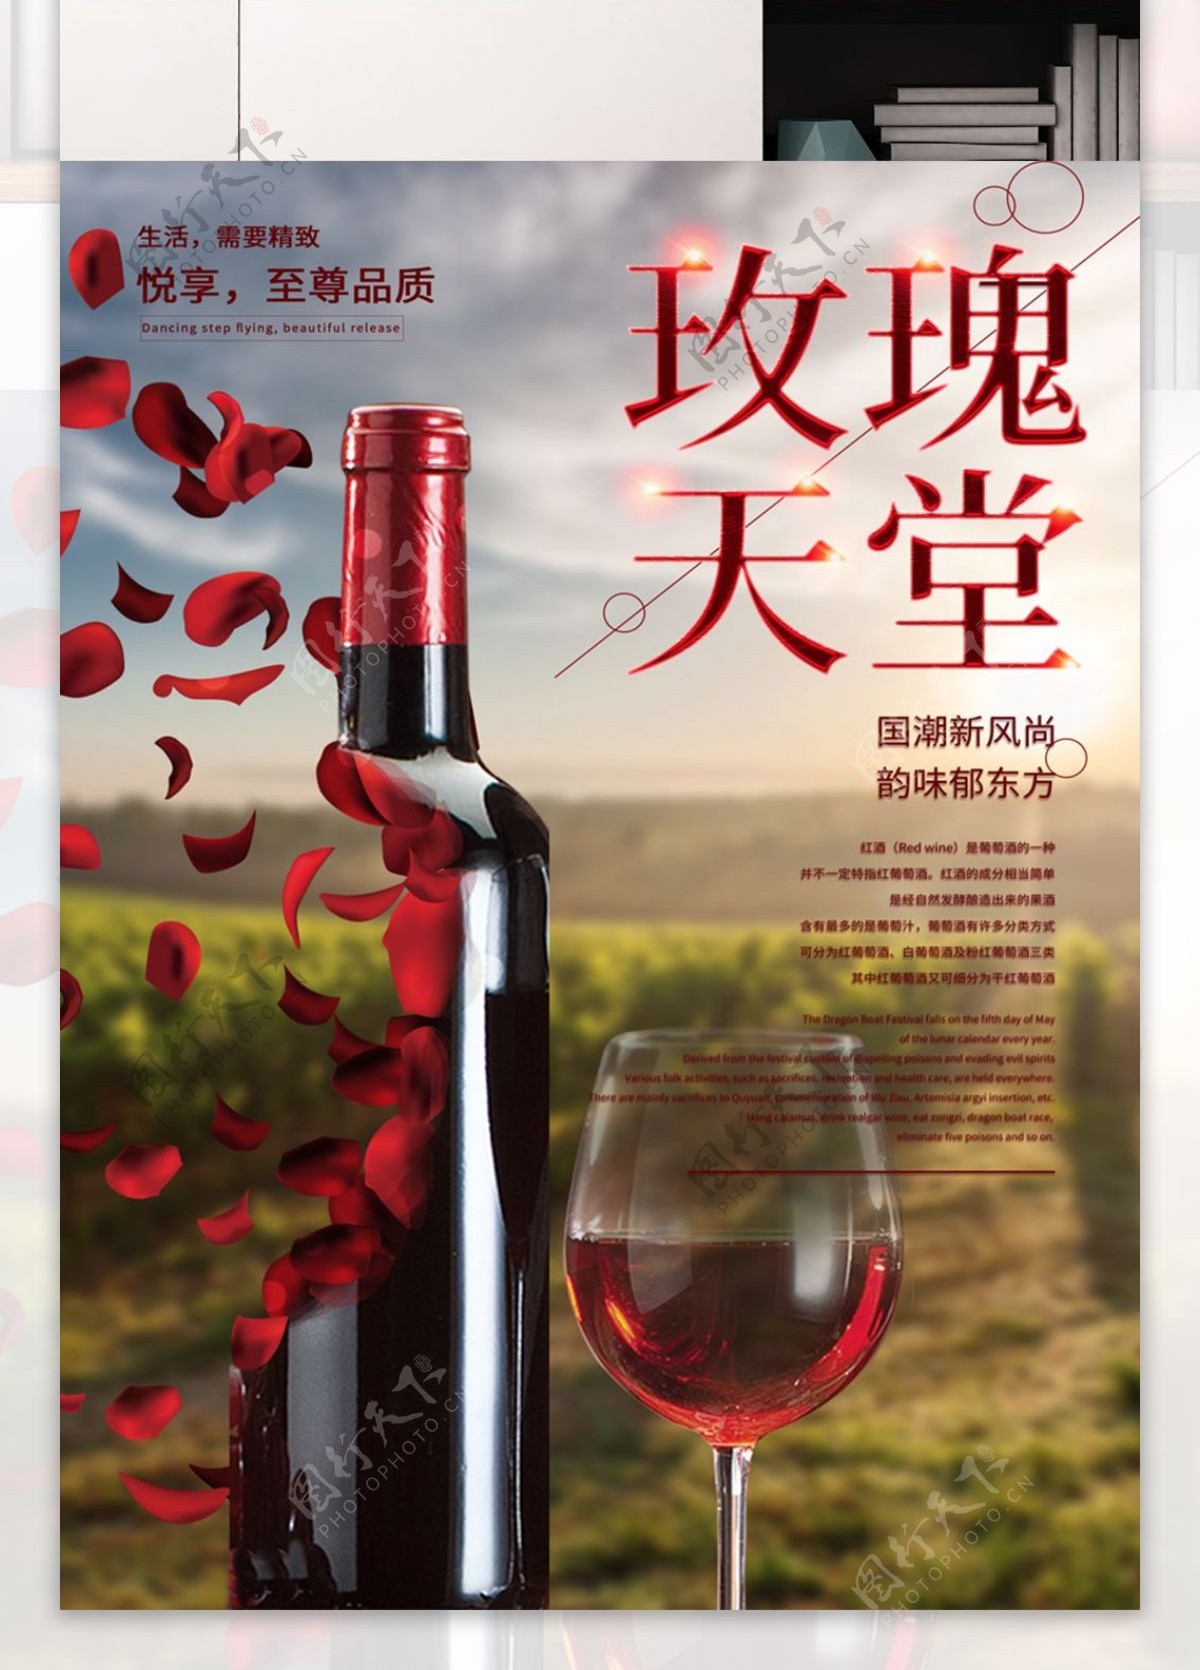 奢华享受法国红酒浪漫葡萄酒促销海报